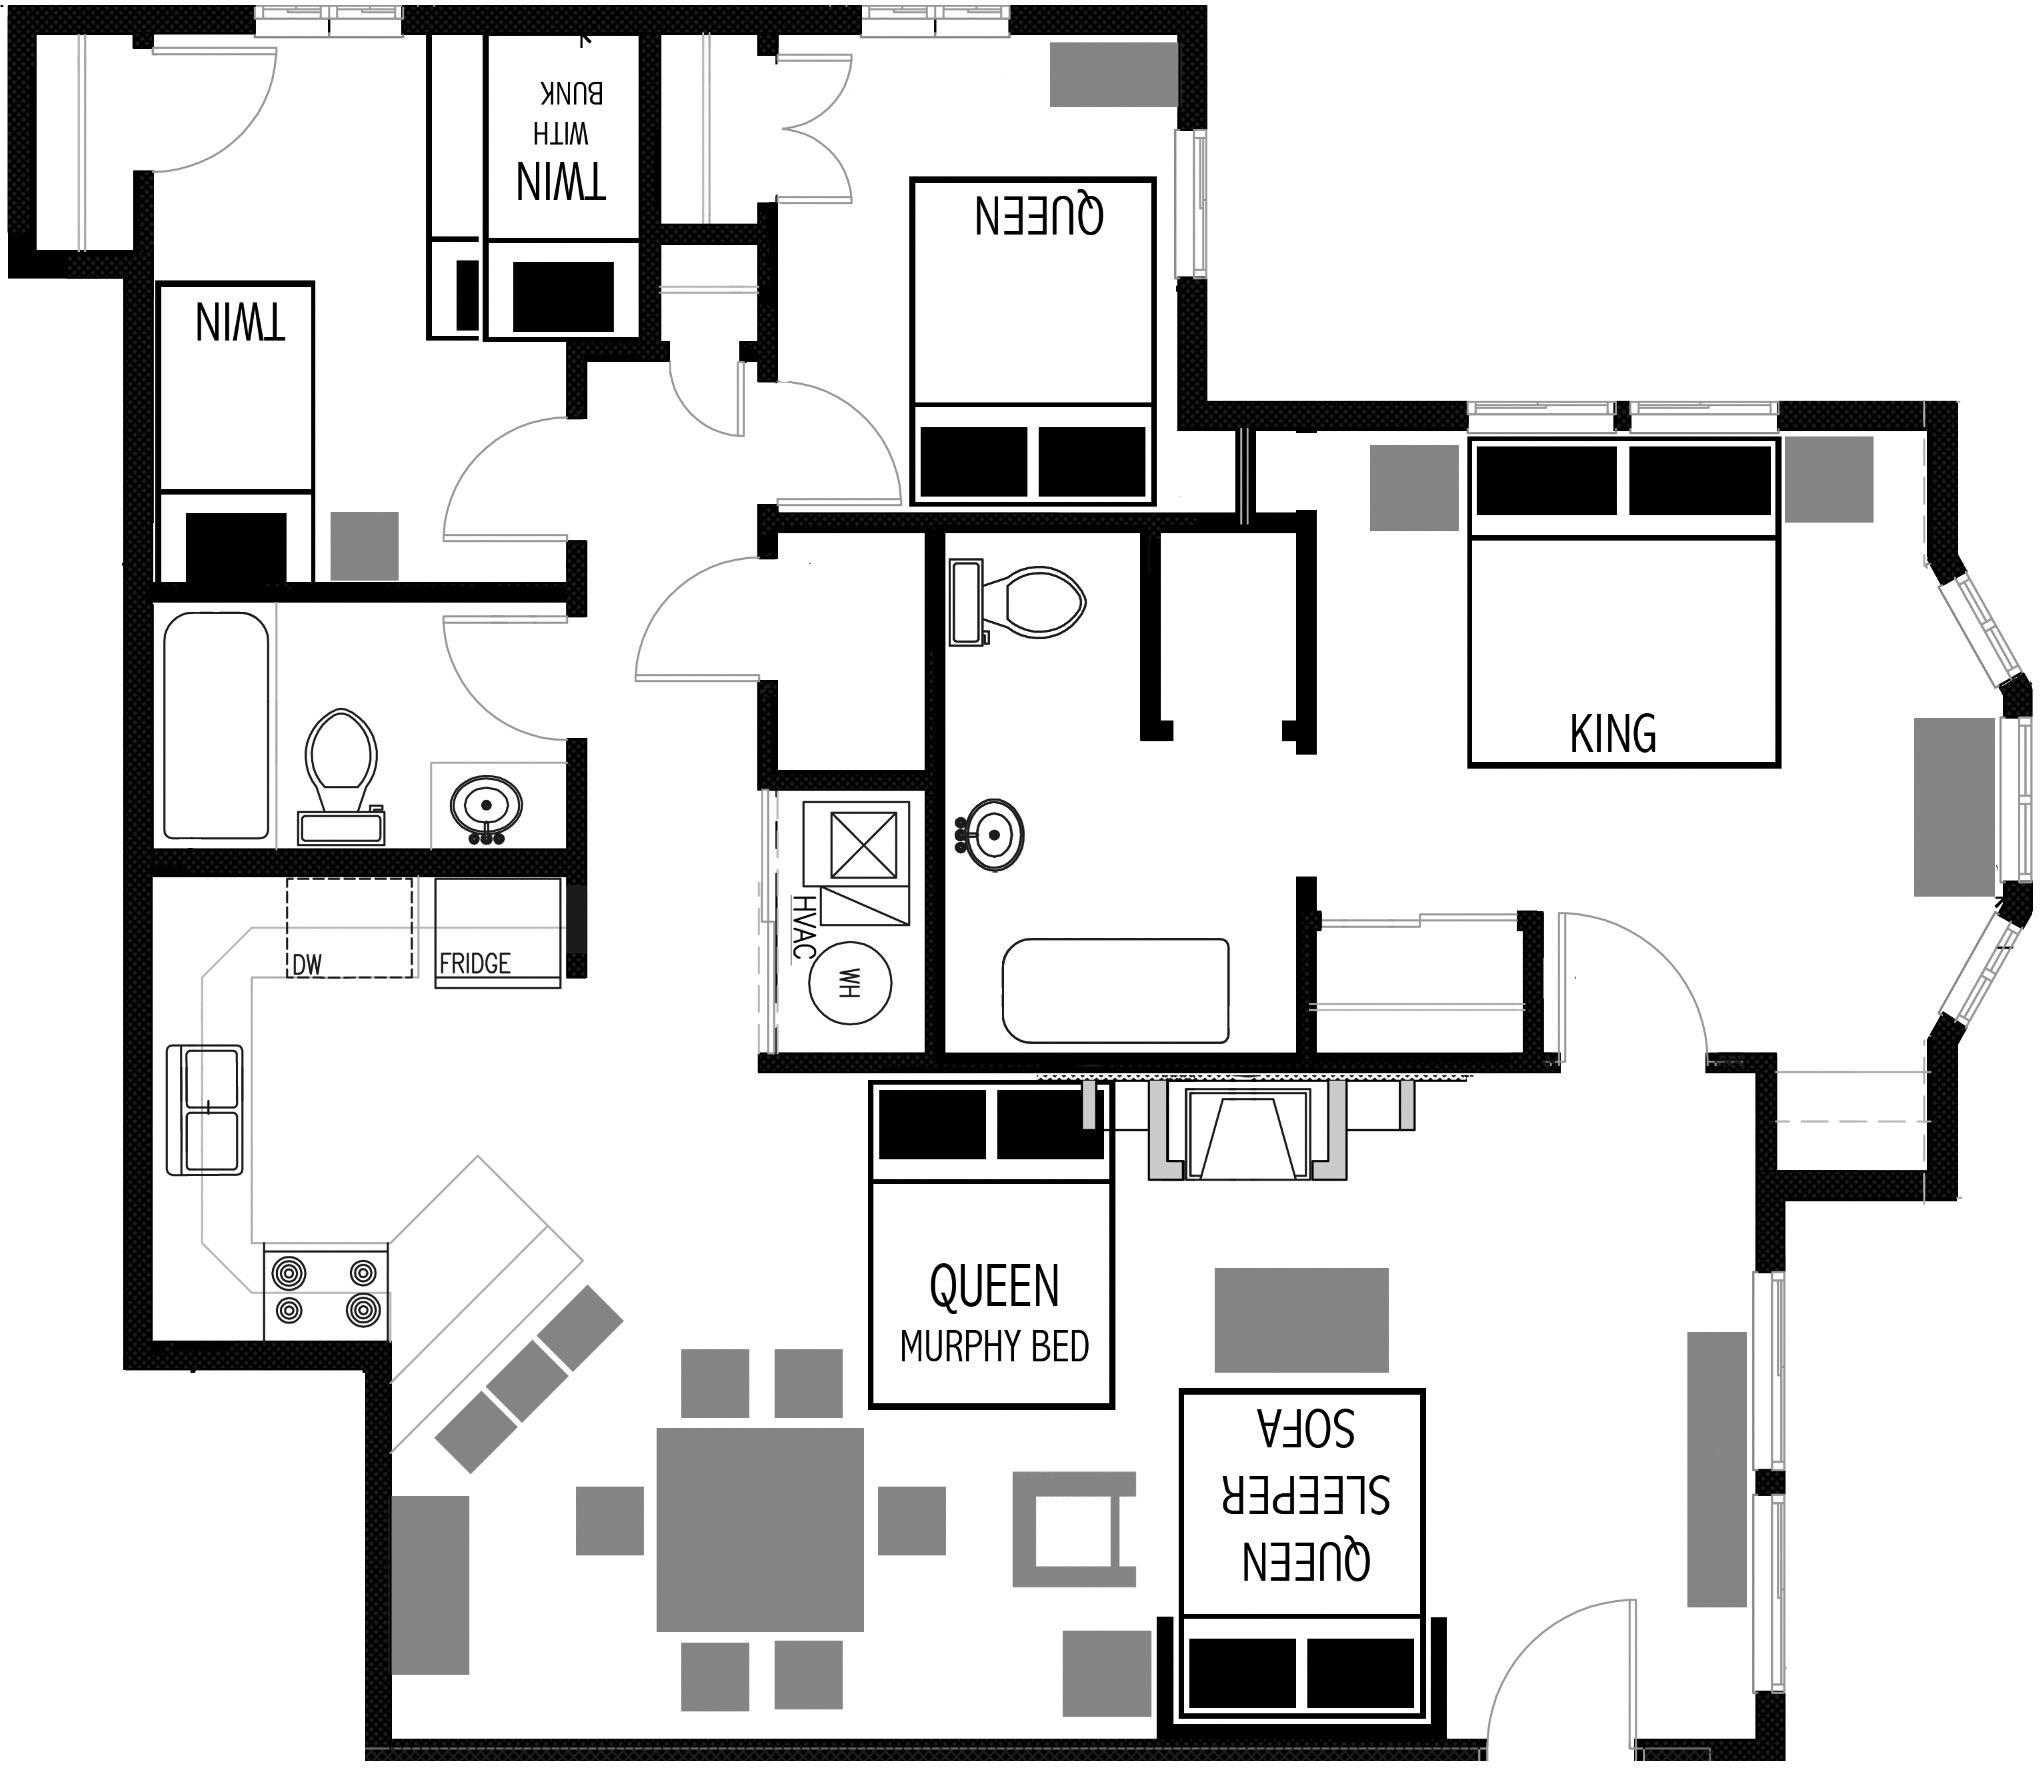 3-bedroom Vacation Rental Floor Plan